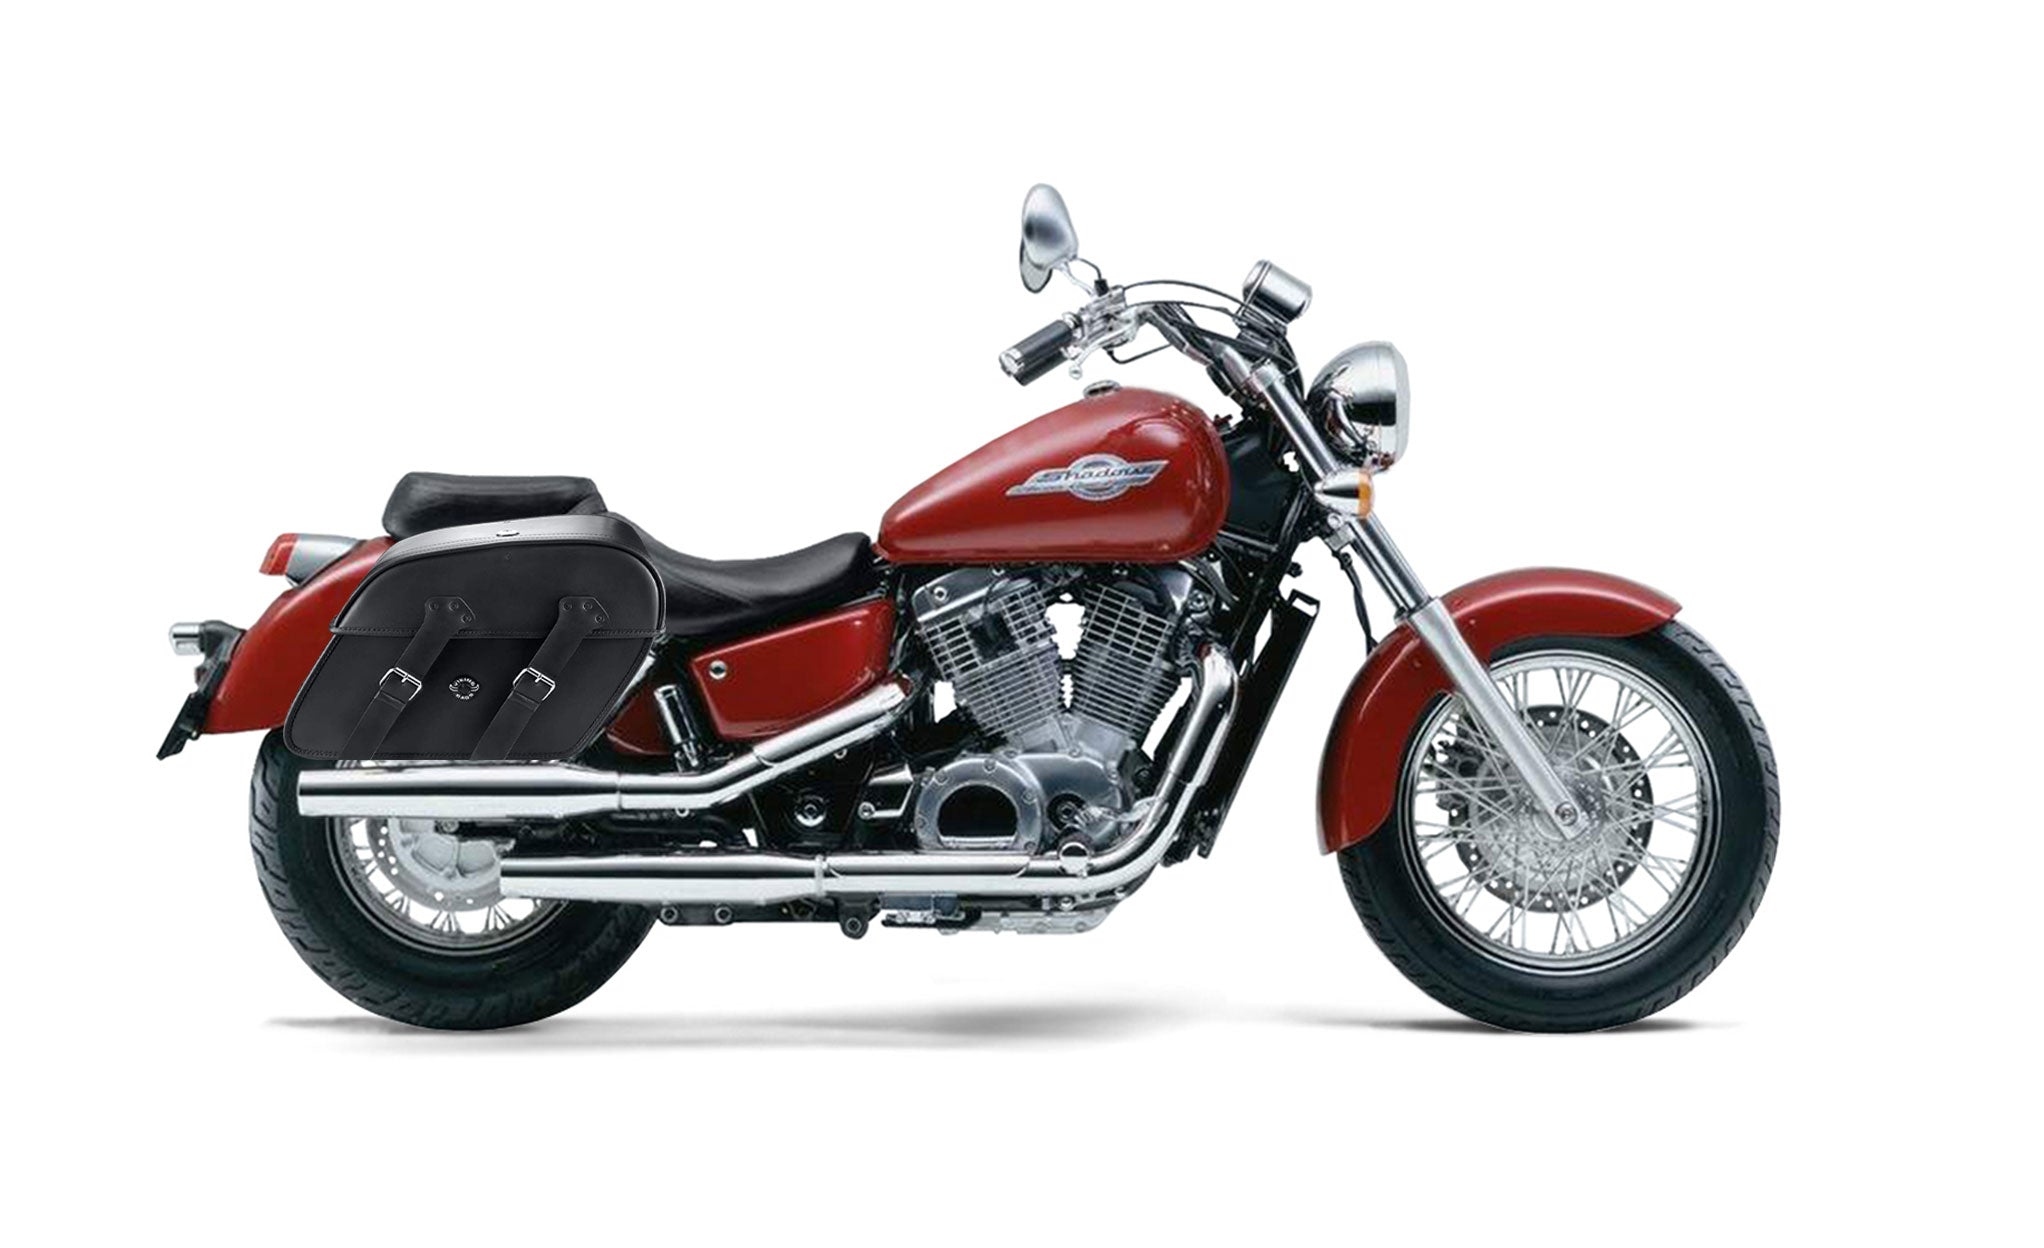 Viking Raven Extra Large Honda Shadow 1100 Ace Shock Cut Out Leather Motorcycle Saddlebags on Bike Photo @expand